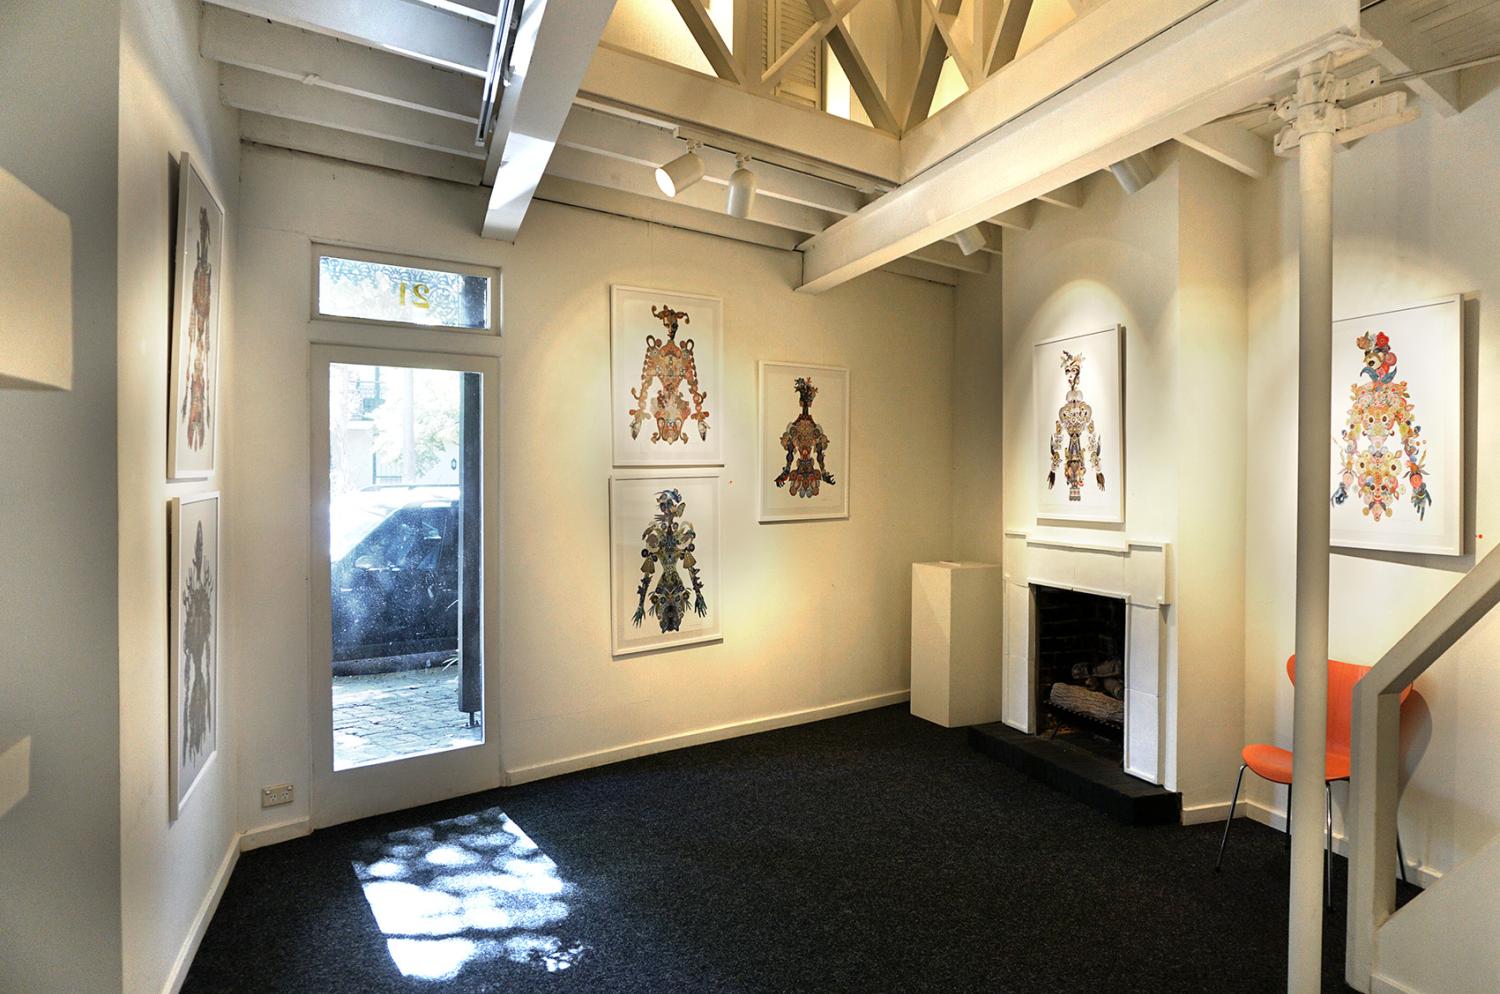 Sydney Gallery Framing